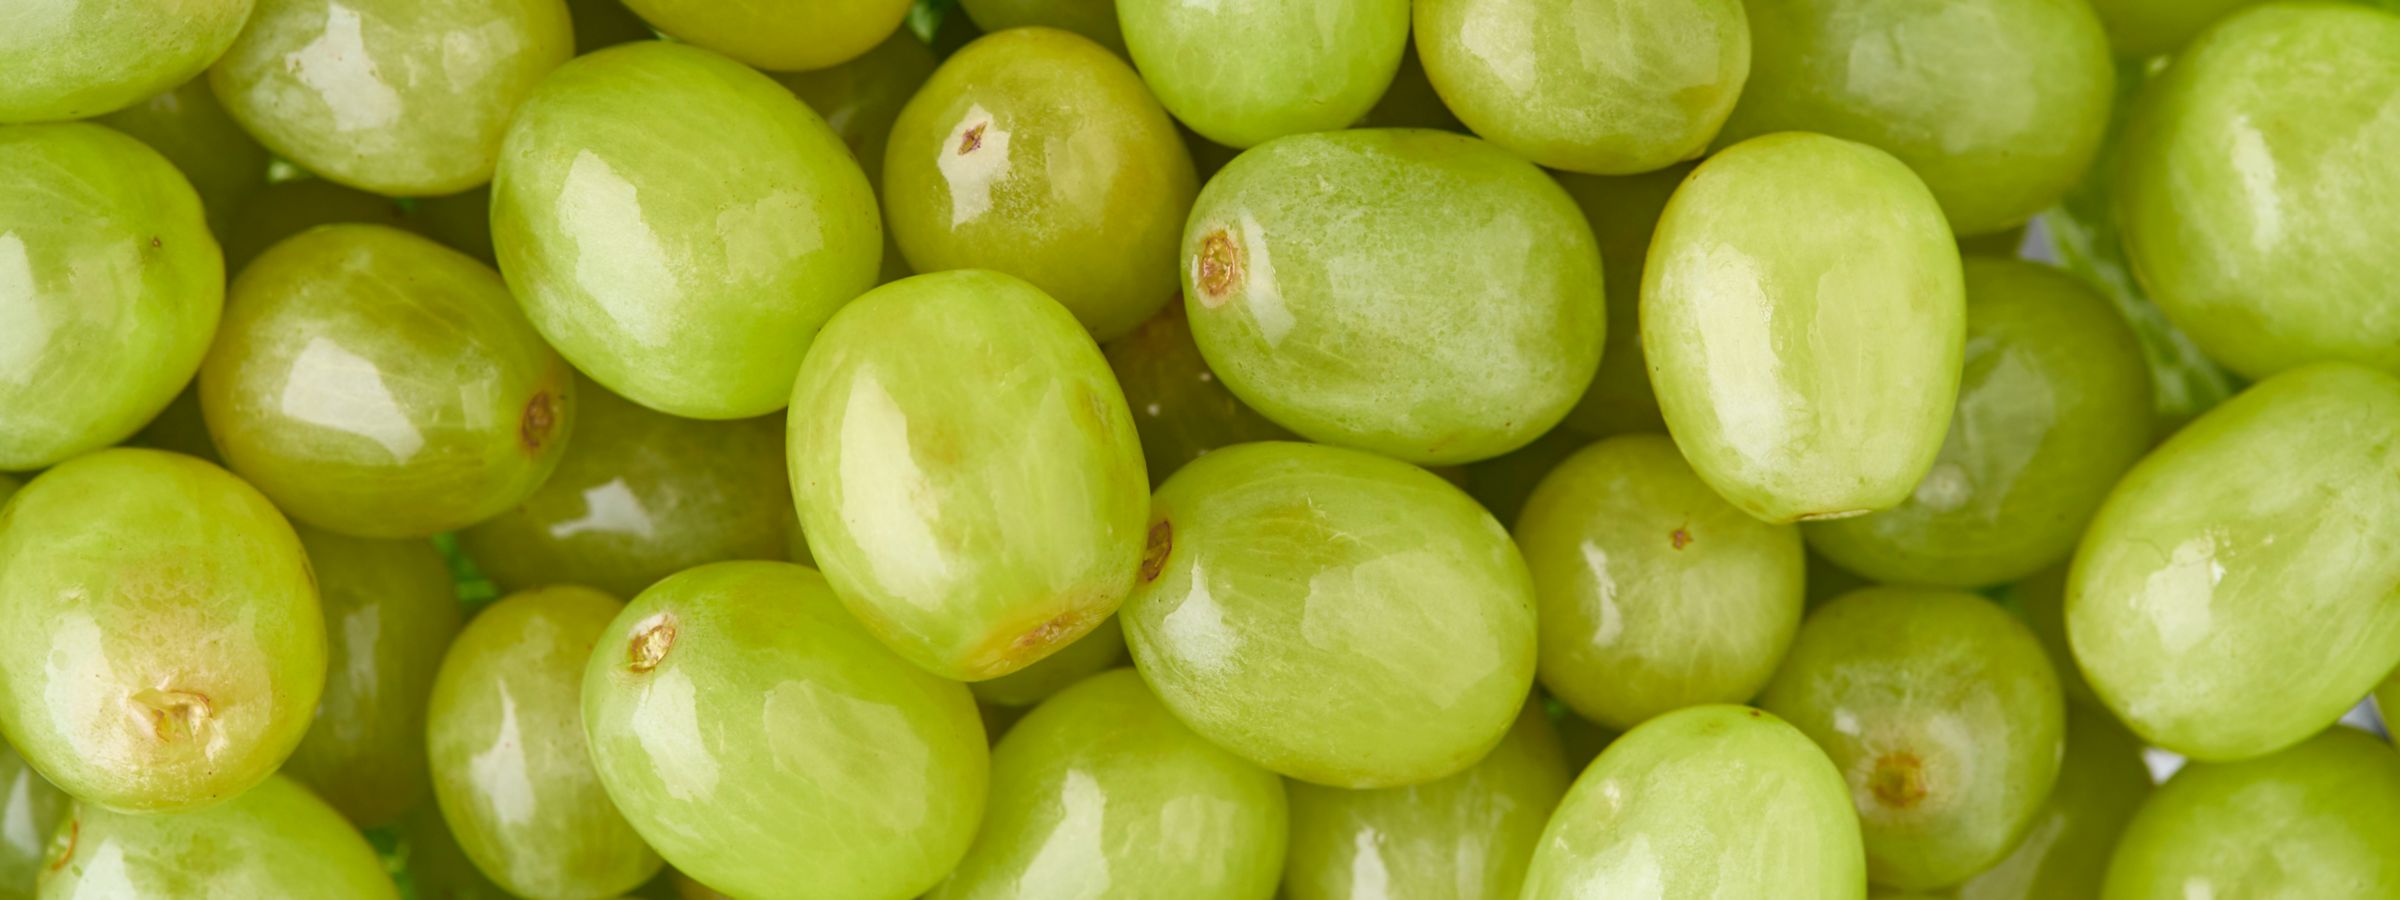 Green grapes.